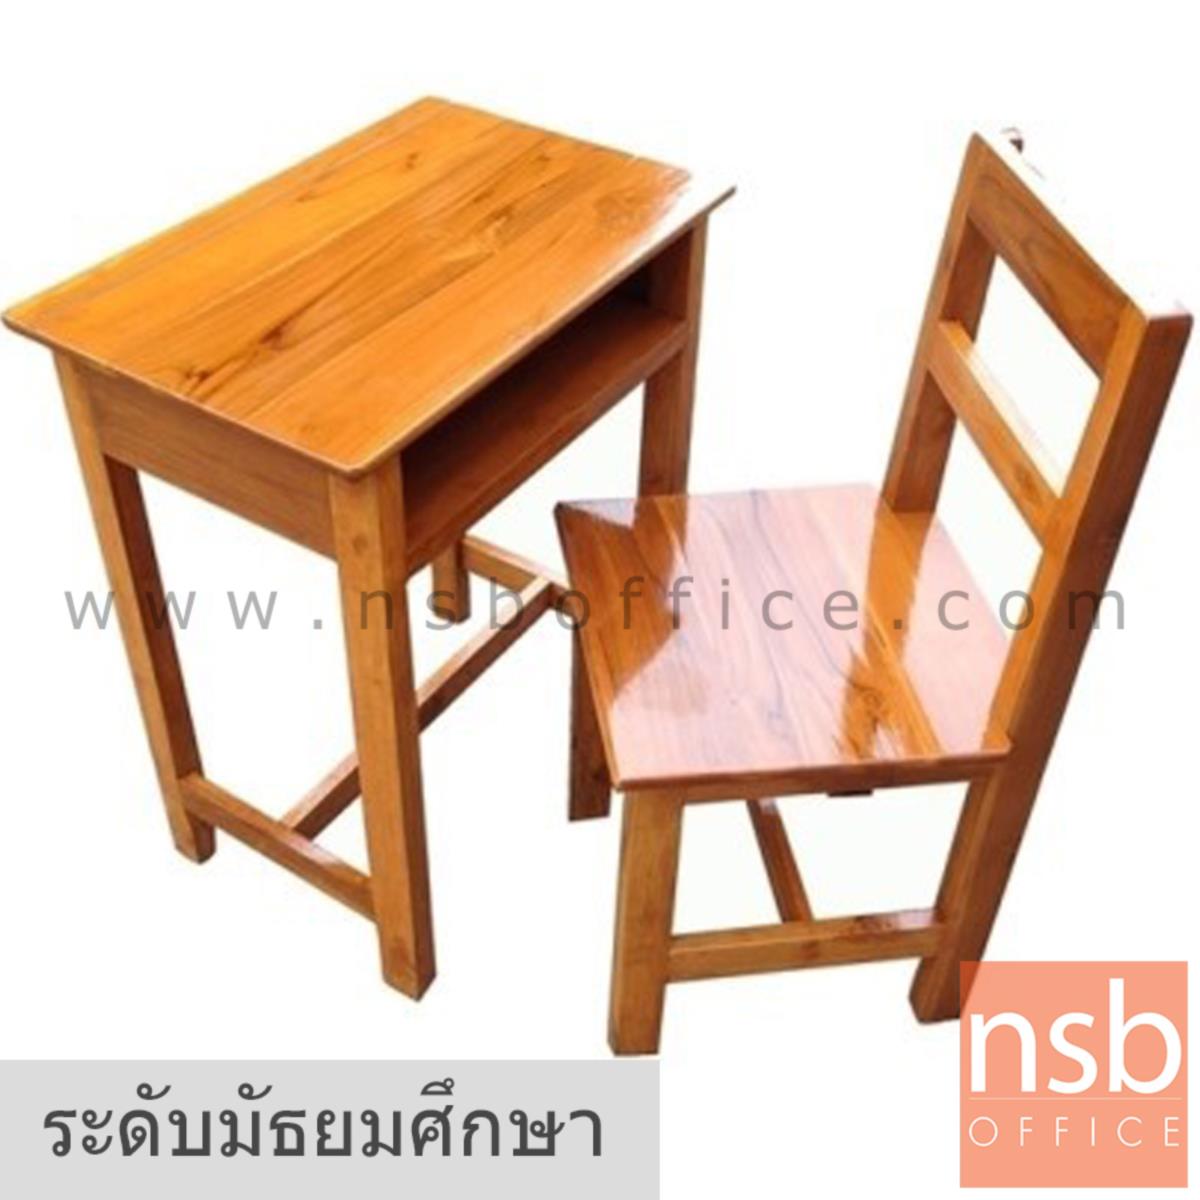 A17A067:ชุดโต๊ะและเก้าอี้นักเรียนไม้สักทองล้วน รุ่น MISSISSIPPI (มิสซิสซิปปี)  ระดับมัธยมศึกษา